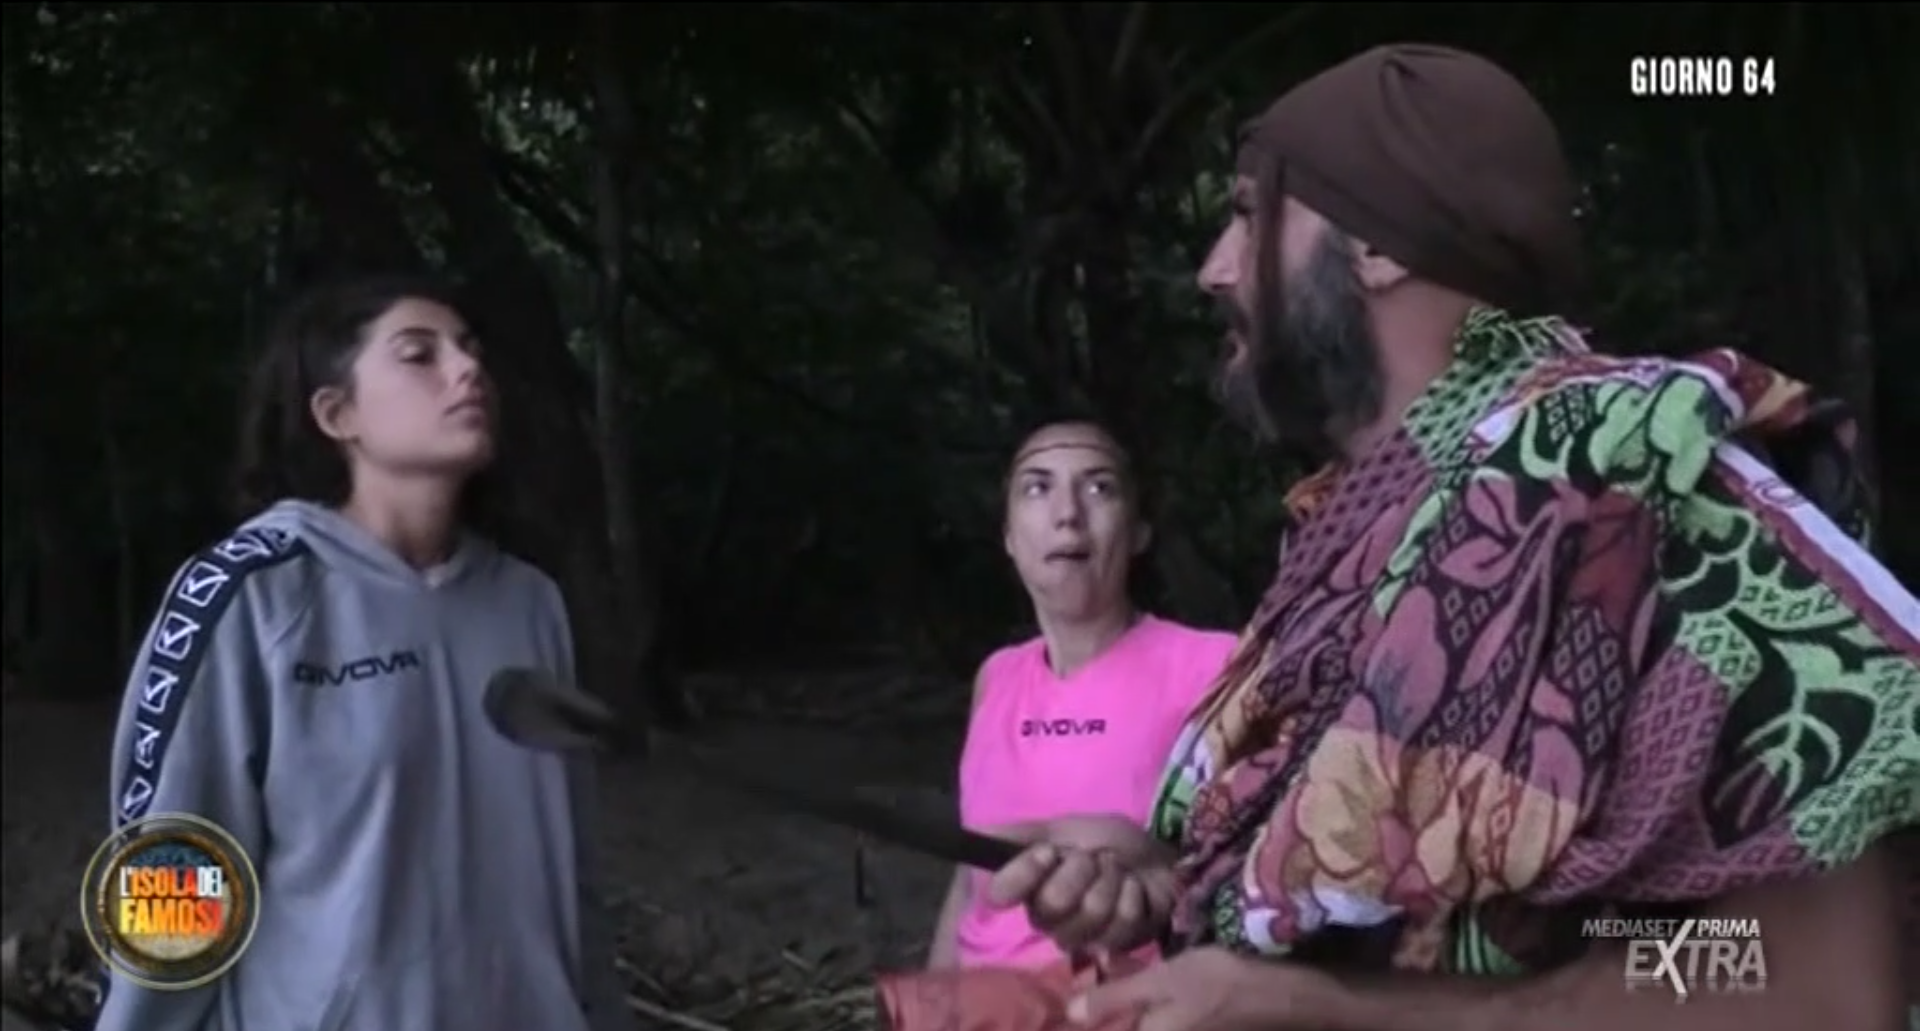 Marialaura piange dopo la nomination all’Isola, Nicolas l’accusa: “Vuole fare compassione!” – VIDEO